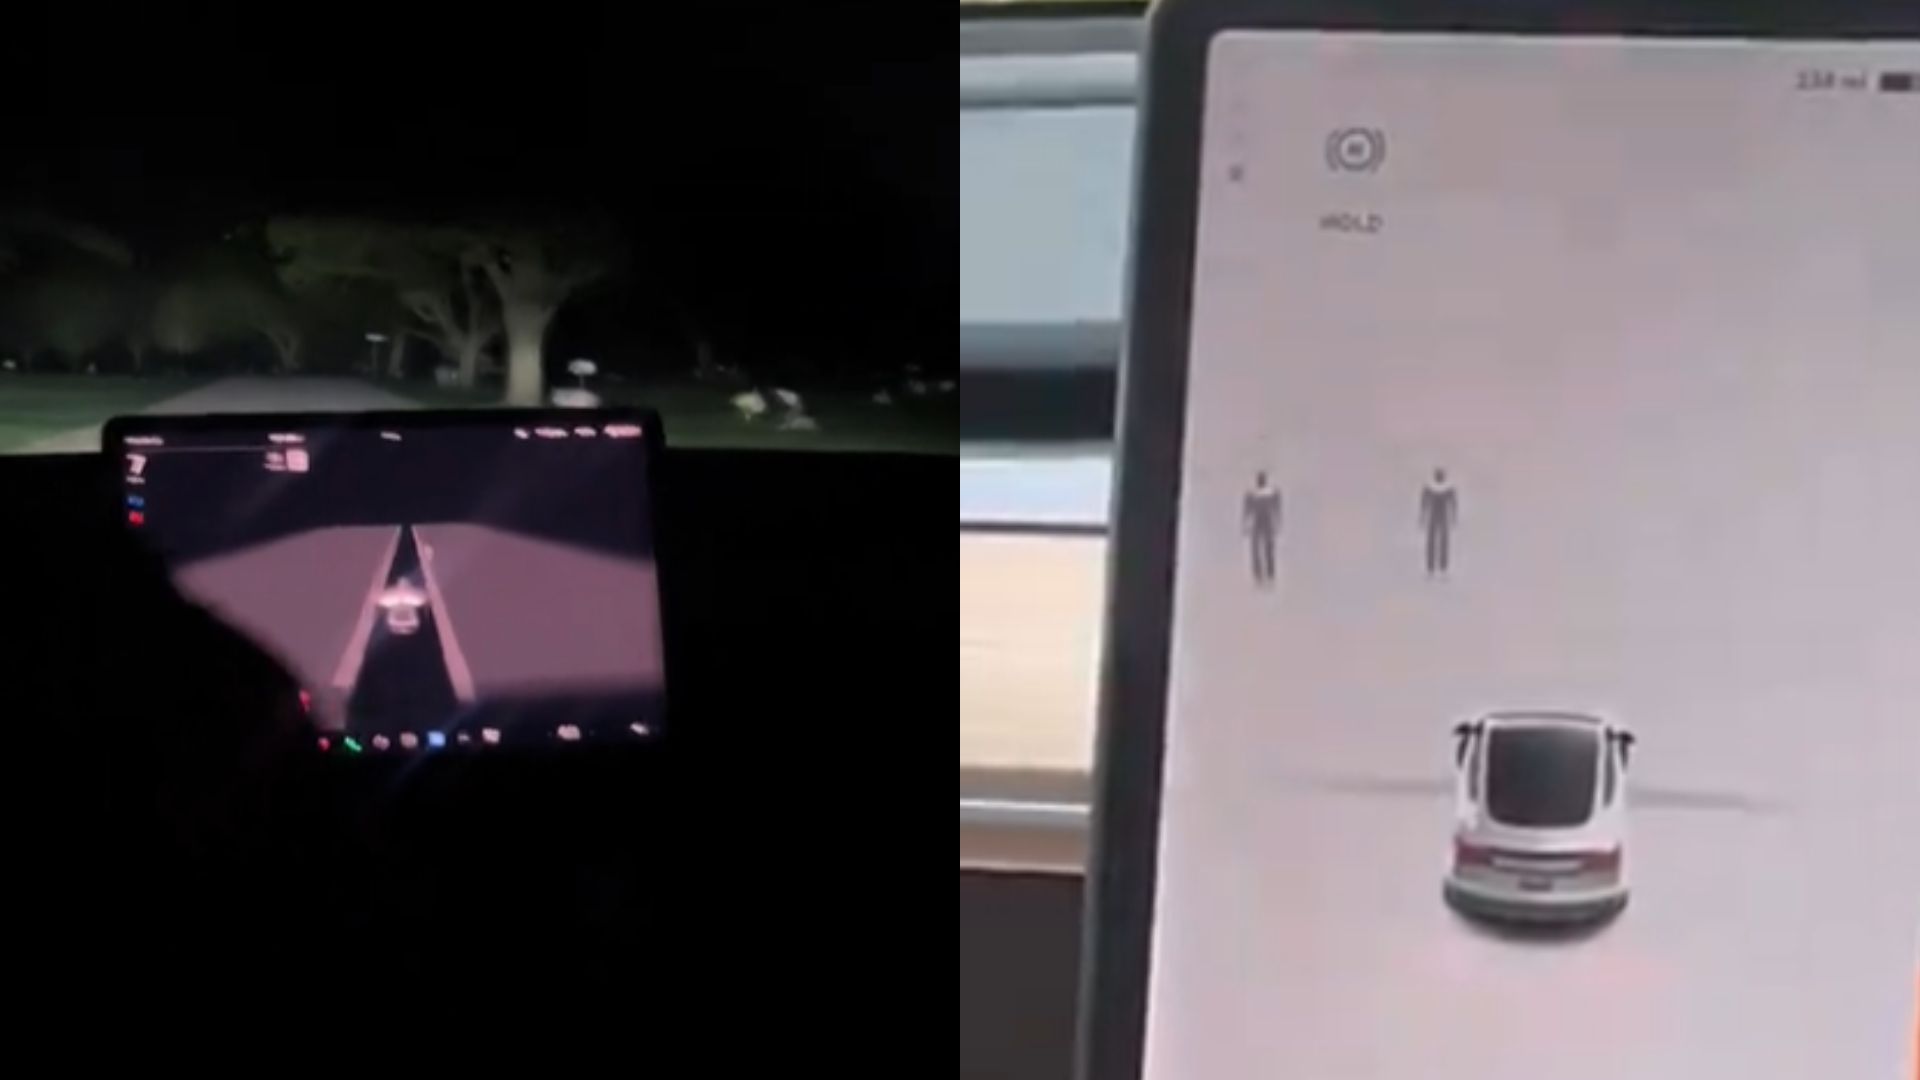 Motoristas se assustam após sistema de carro sinalizar “fantasma” em cemitérios, e vídeos viralizam; assista